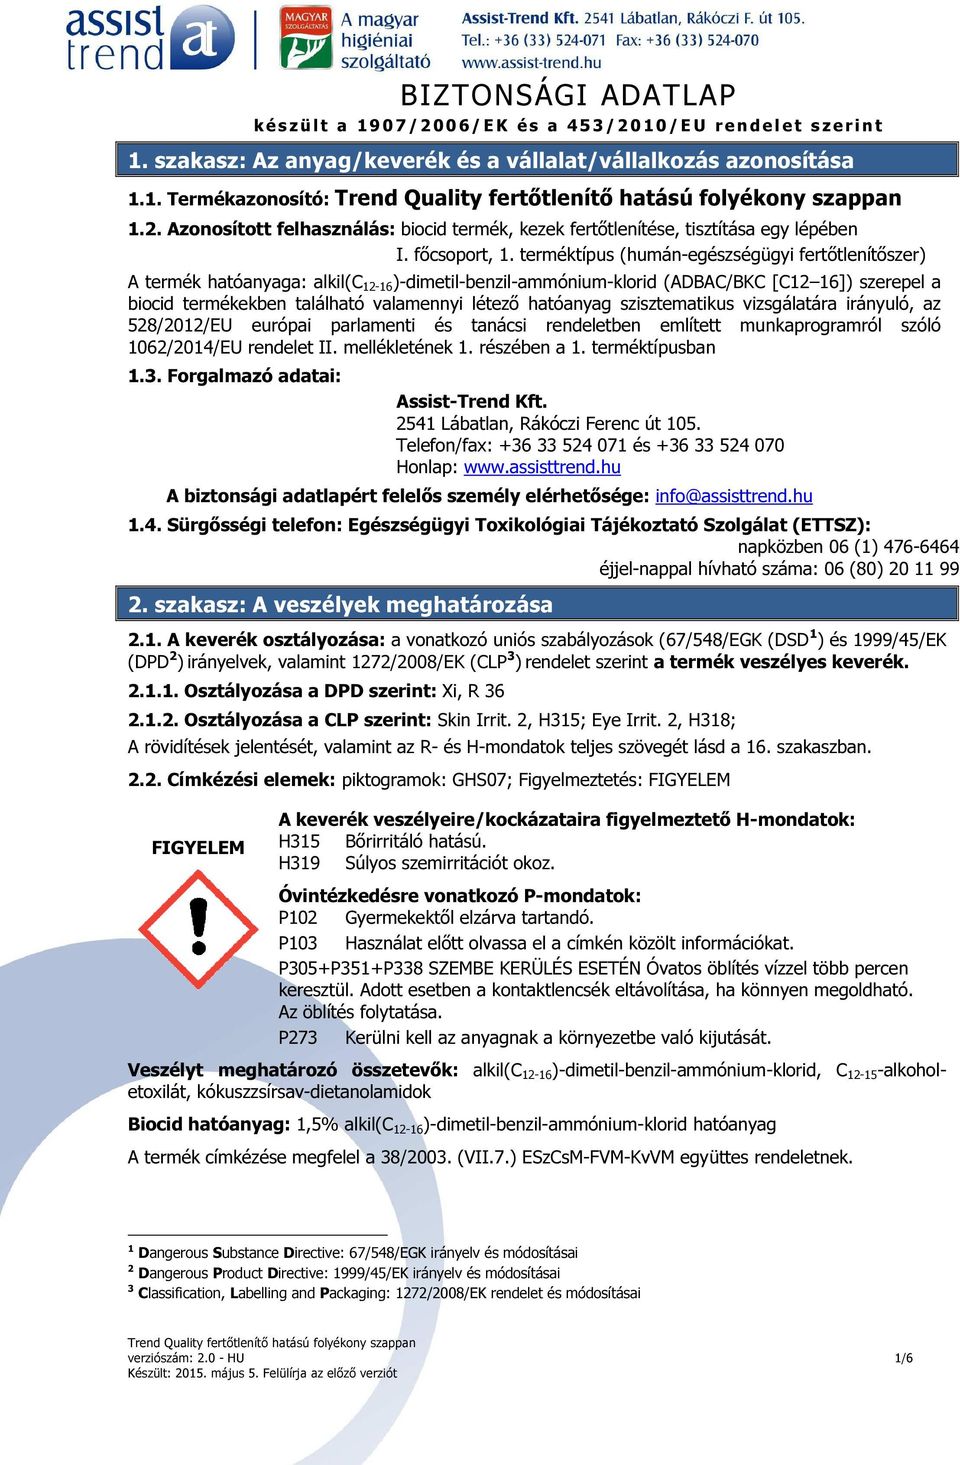 BIZTONSÁGI ADATLAP. 1. szakasz: Az anyag/keverék és a vállalat/vállalkozás  azonosítása - PDF Free Download